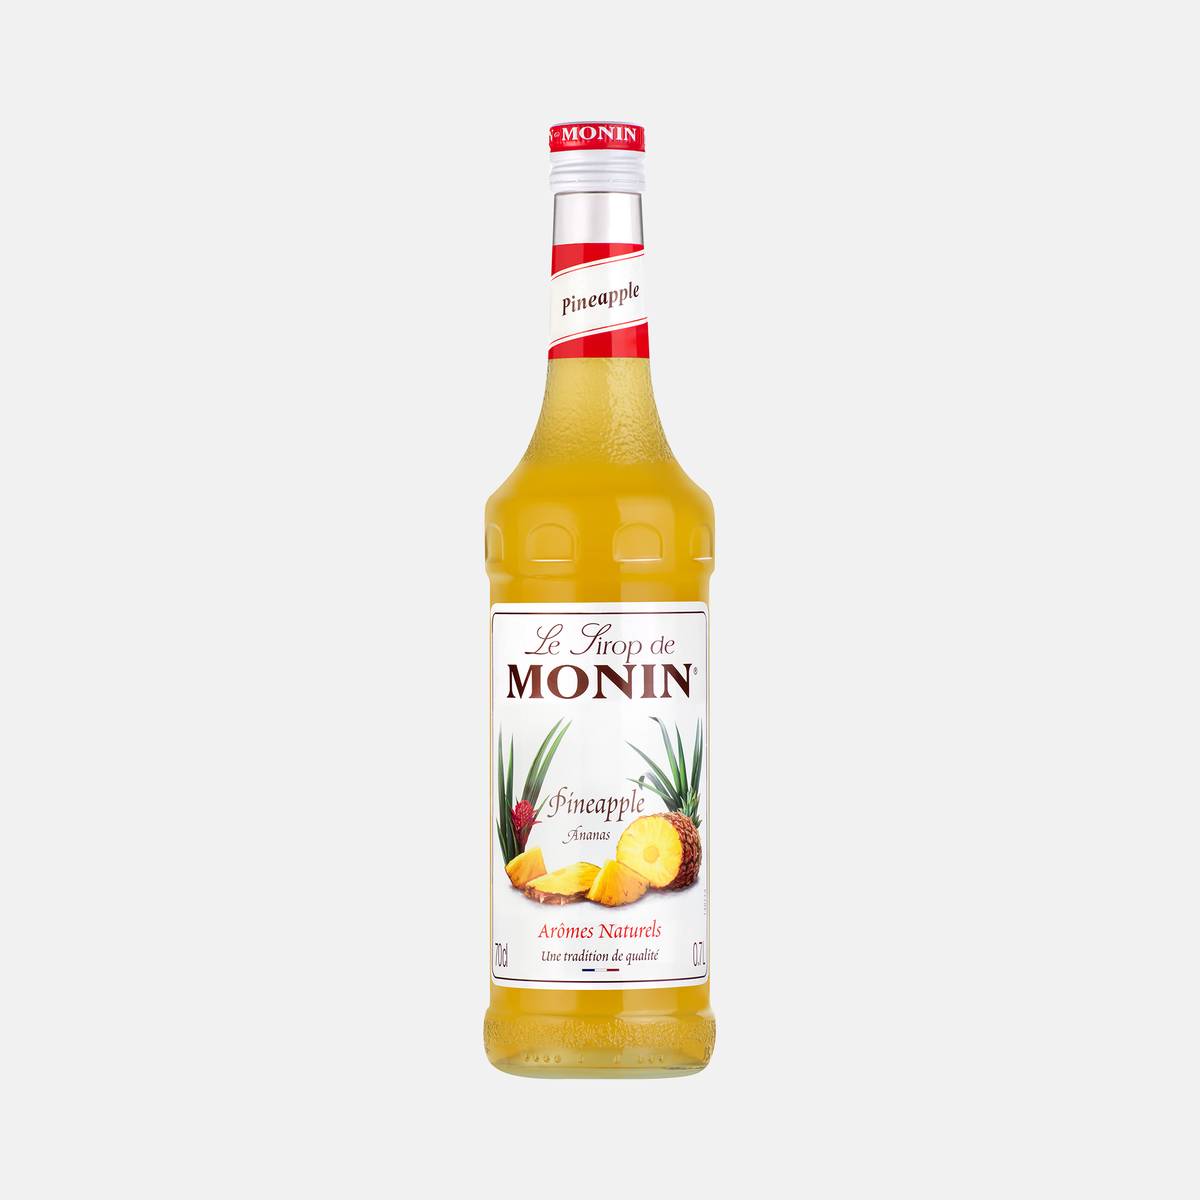 Monin Pineapple Syrup 700ml Glass Bottle